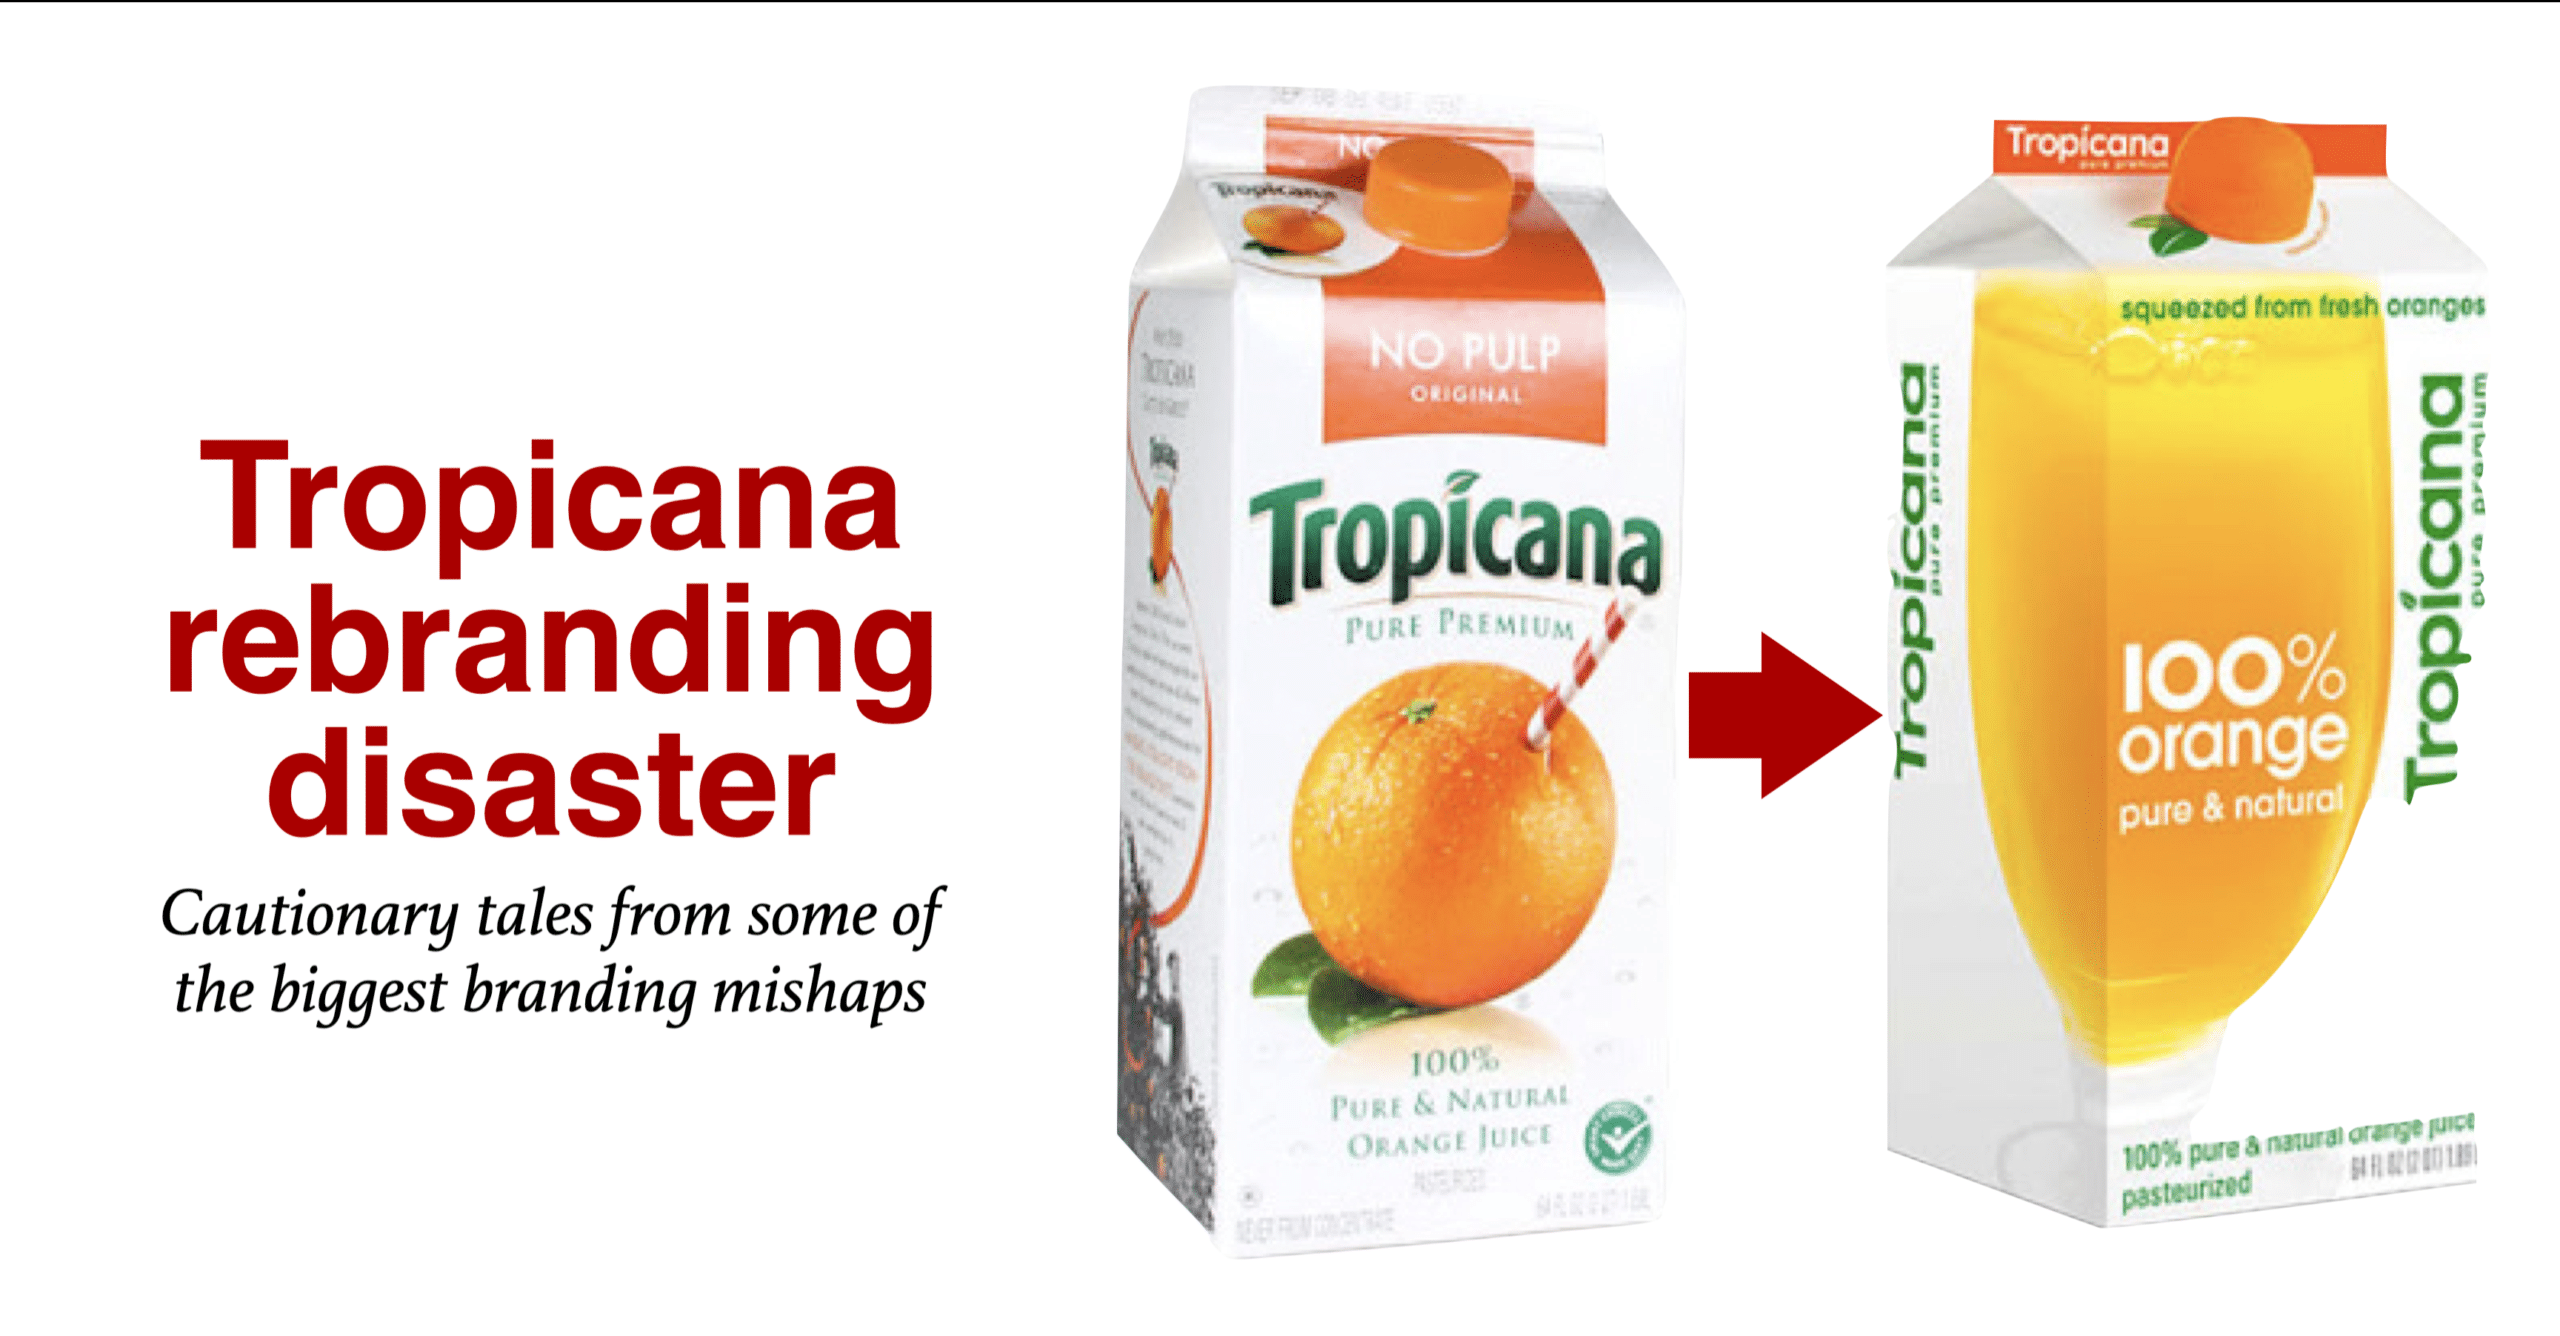 Tropicana Rebranding disaster